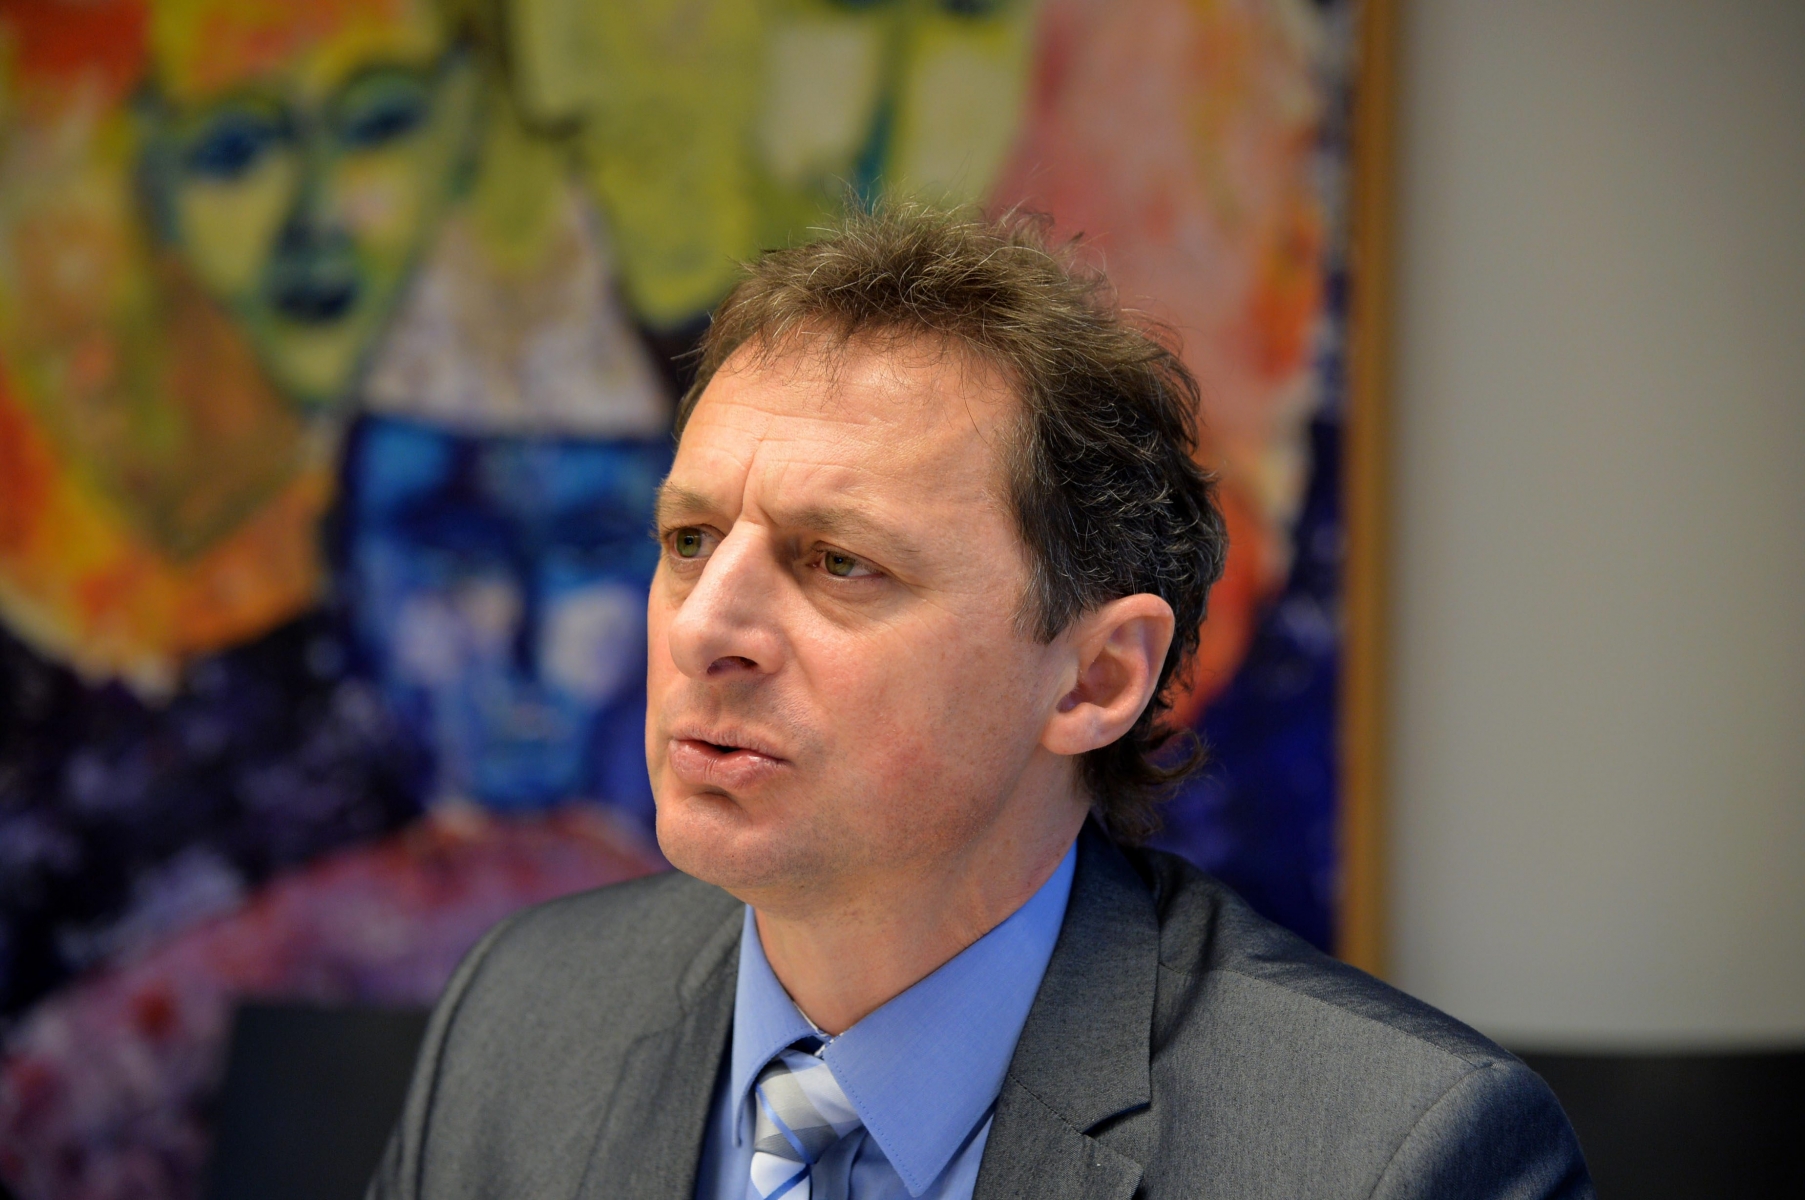 Laurent Christe, directeur général de l'Hôpital neuchâtelois.

La Chaux-de-Fonds, le 21 fevrier 2014
Photo: Richard Leuenberger